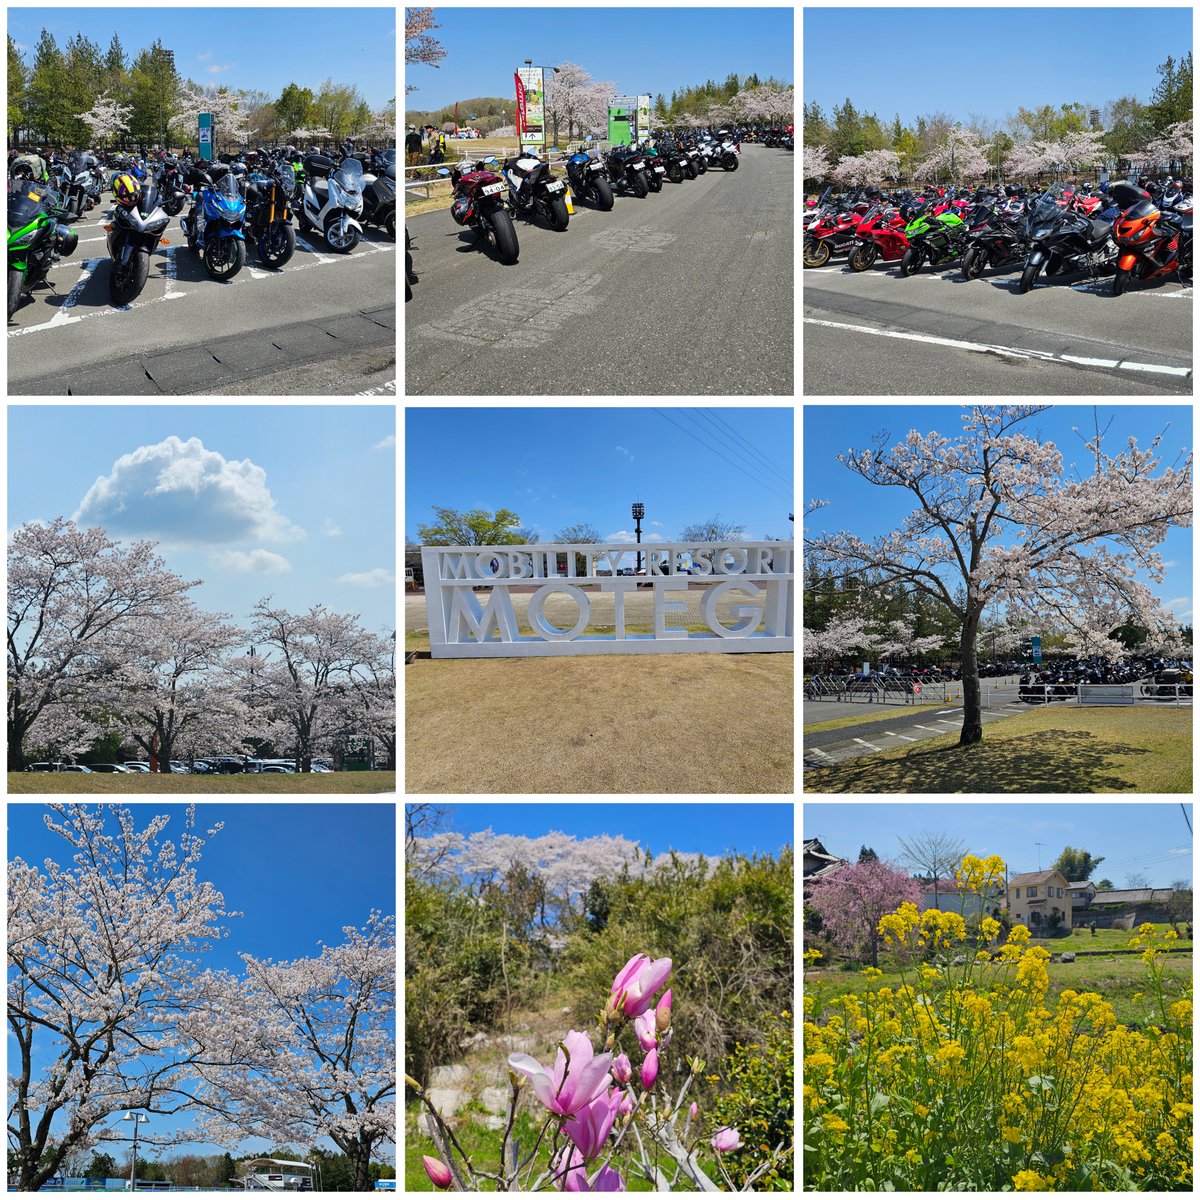 20240413(土)－14(日)
全日本ロードレース選手権　第2戦　スーパーバイクレースinもてぎを見に行って来ました😀
2日間ともよく晴れてレース日和でした
モビリティリゾートもてぎはこの時期は桜🌸も咲いててとても綺麗ですね🌸

レースはJSB1000のYAMAHA　FACTORY　RACING